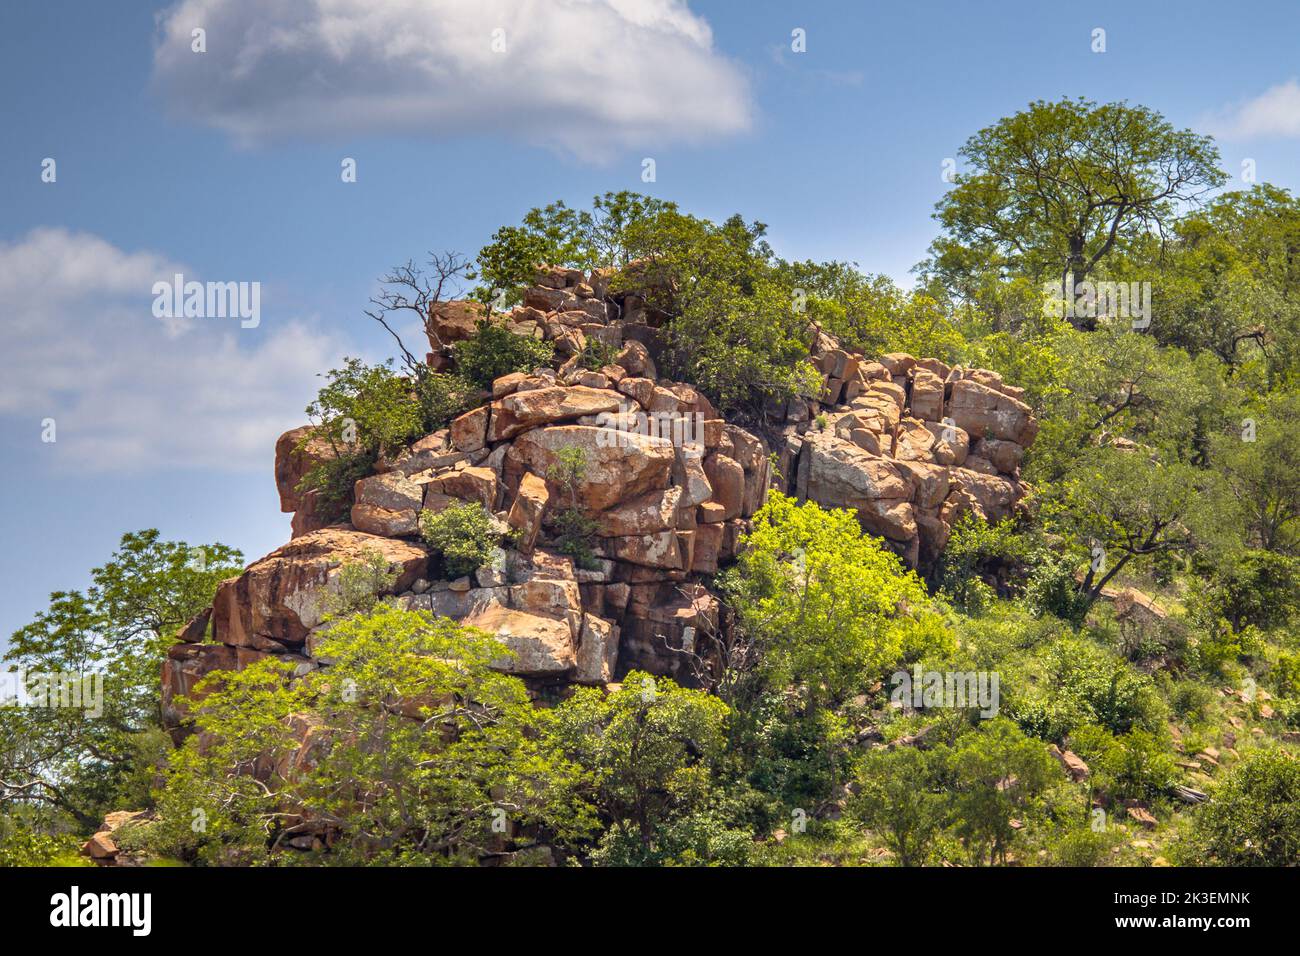 Piton rocheux ou koppie rhyolitiques dans le parc national Kruger en Afrique du Sud Banque D'Images